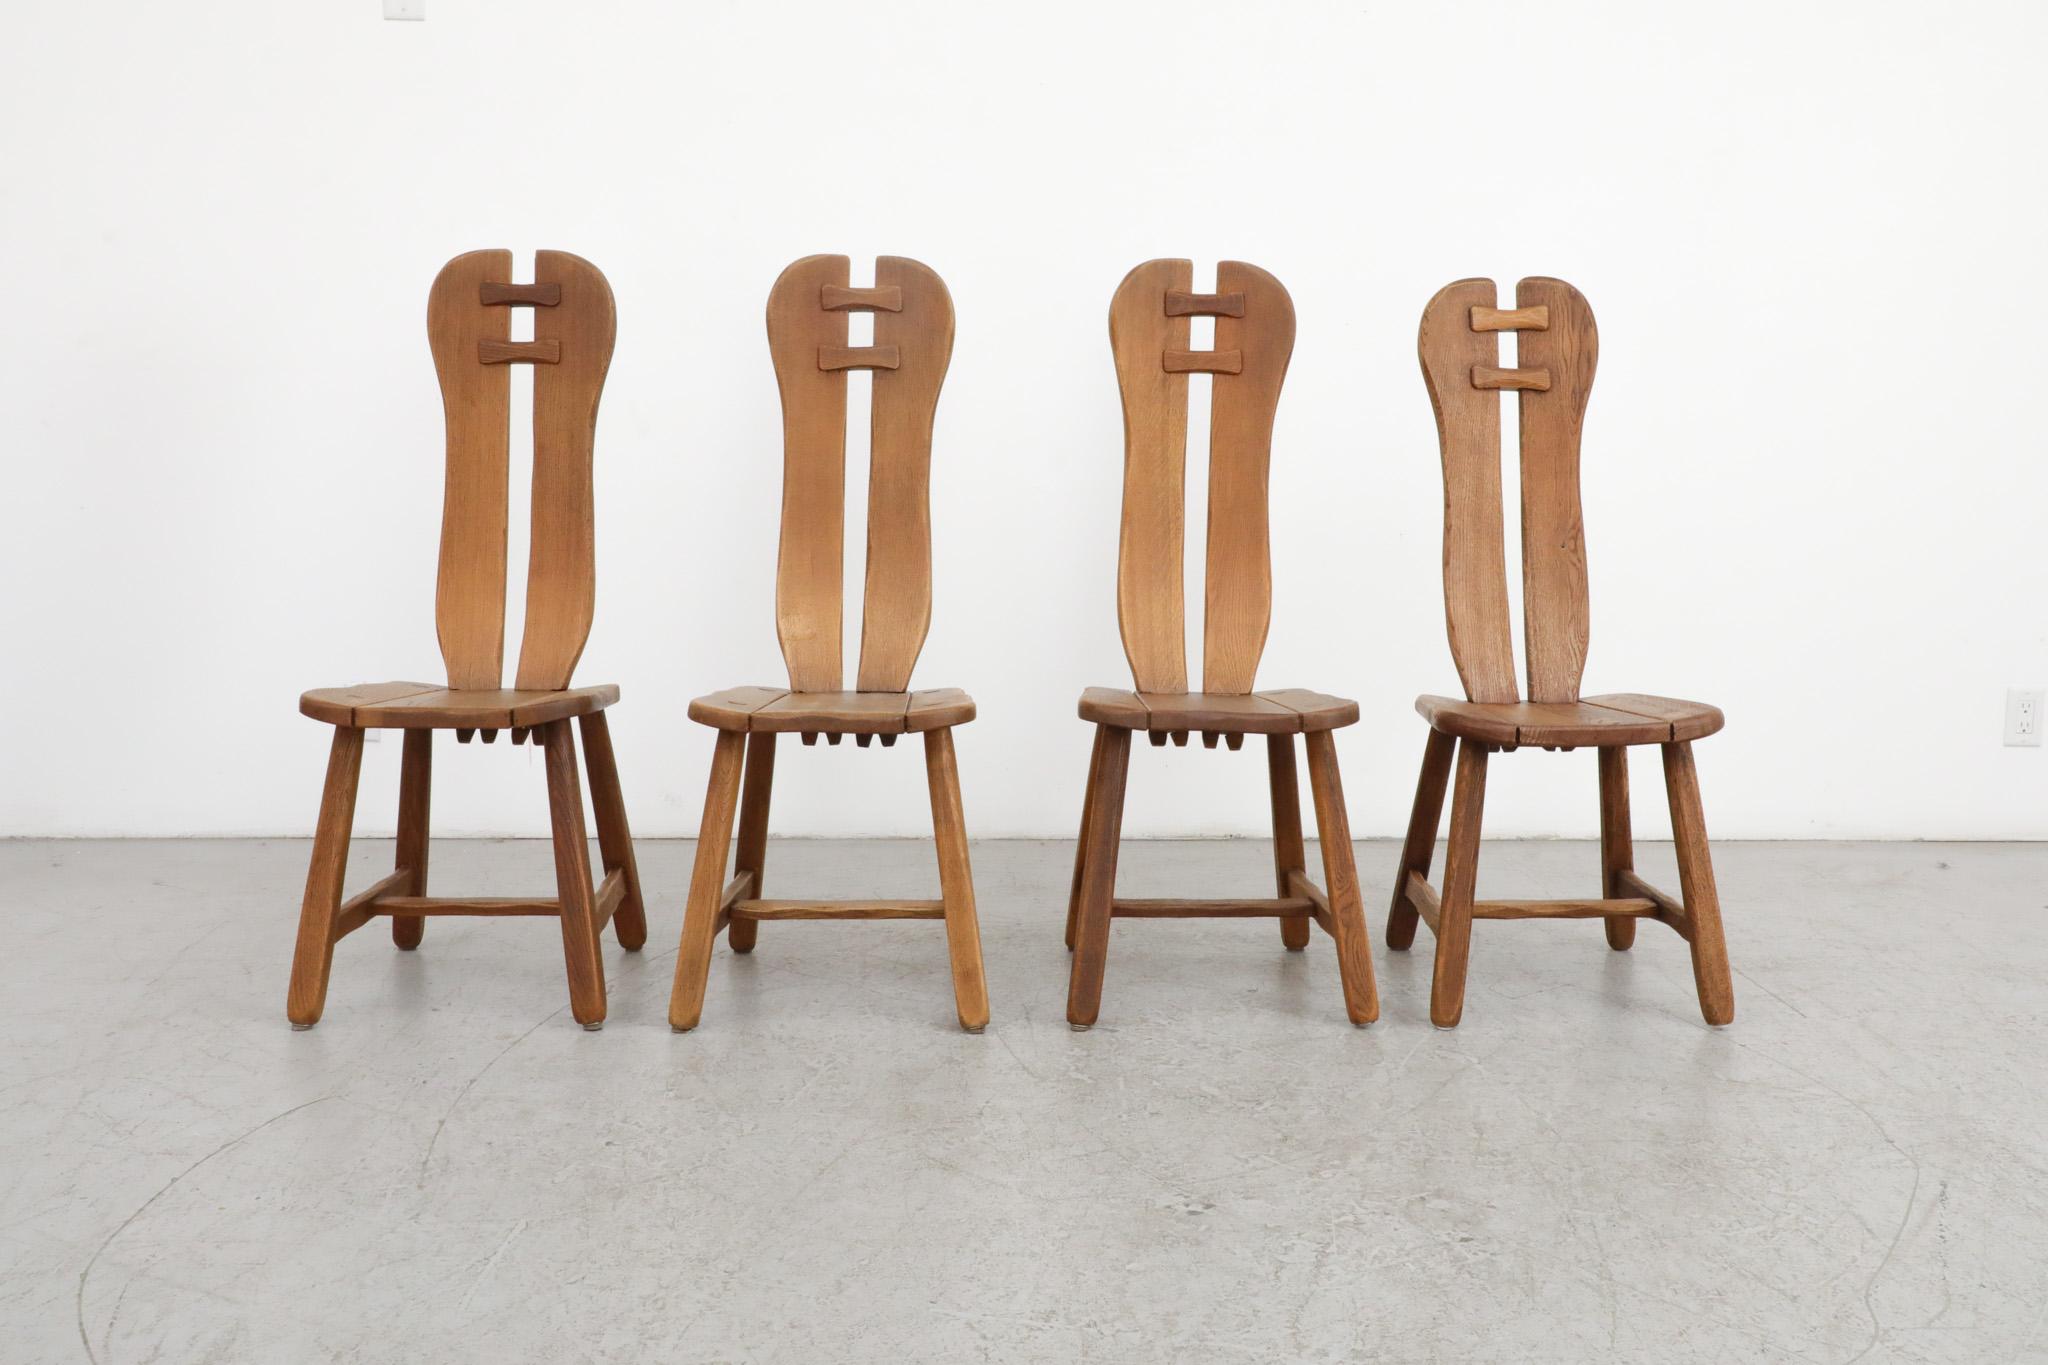 Ensemble de 4 chaises de salle à manger brutalistes à haut dossier du milieu du siècle dernier, fabriquées par De Puydt, Belgique, années 1970. Chêne robuste au grain épais, usure normale et belle patine profonde pour leur âge. En état d'origine